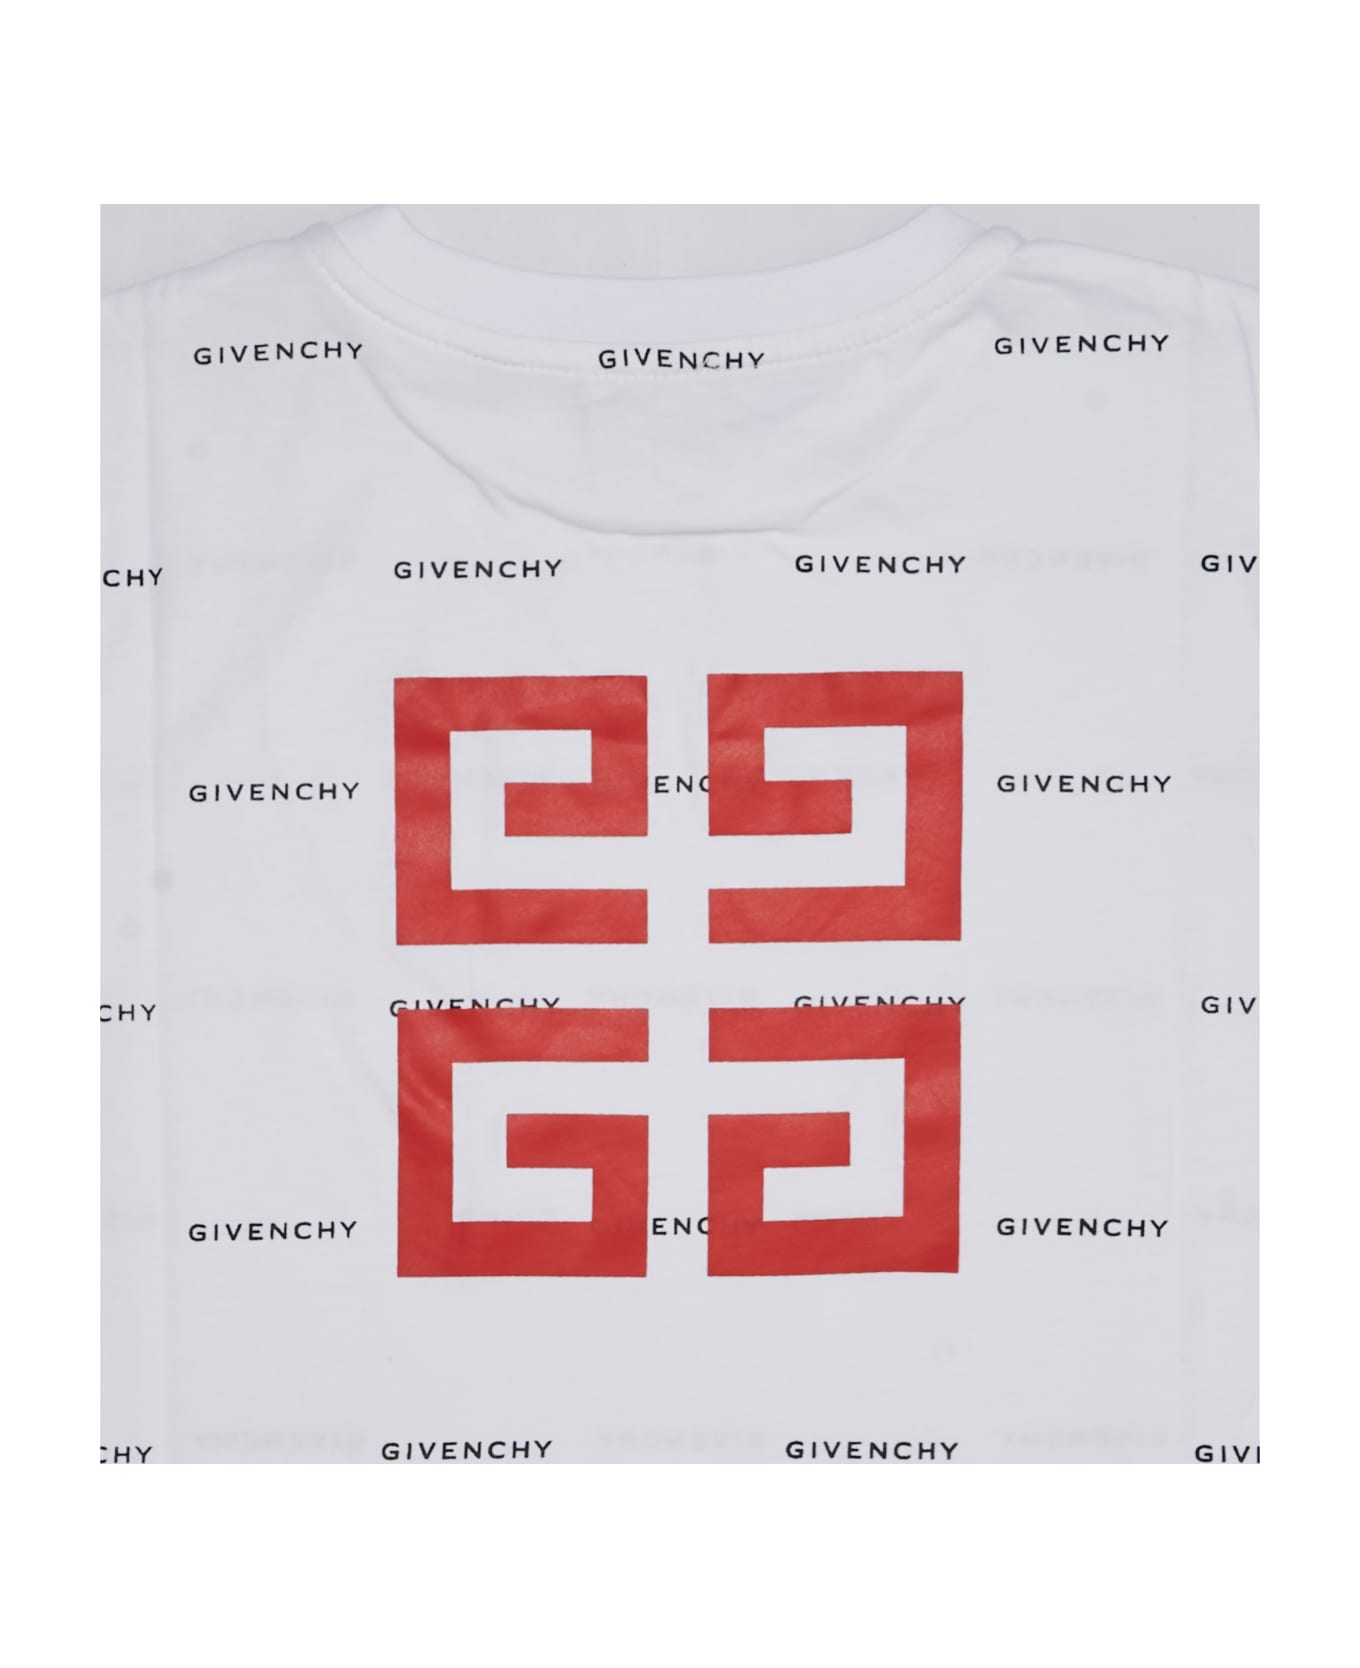 Givenchy T-shirt T-shirt - BIANCO-NERO